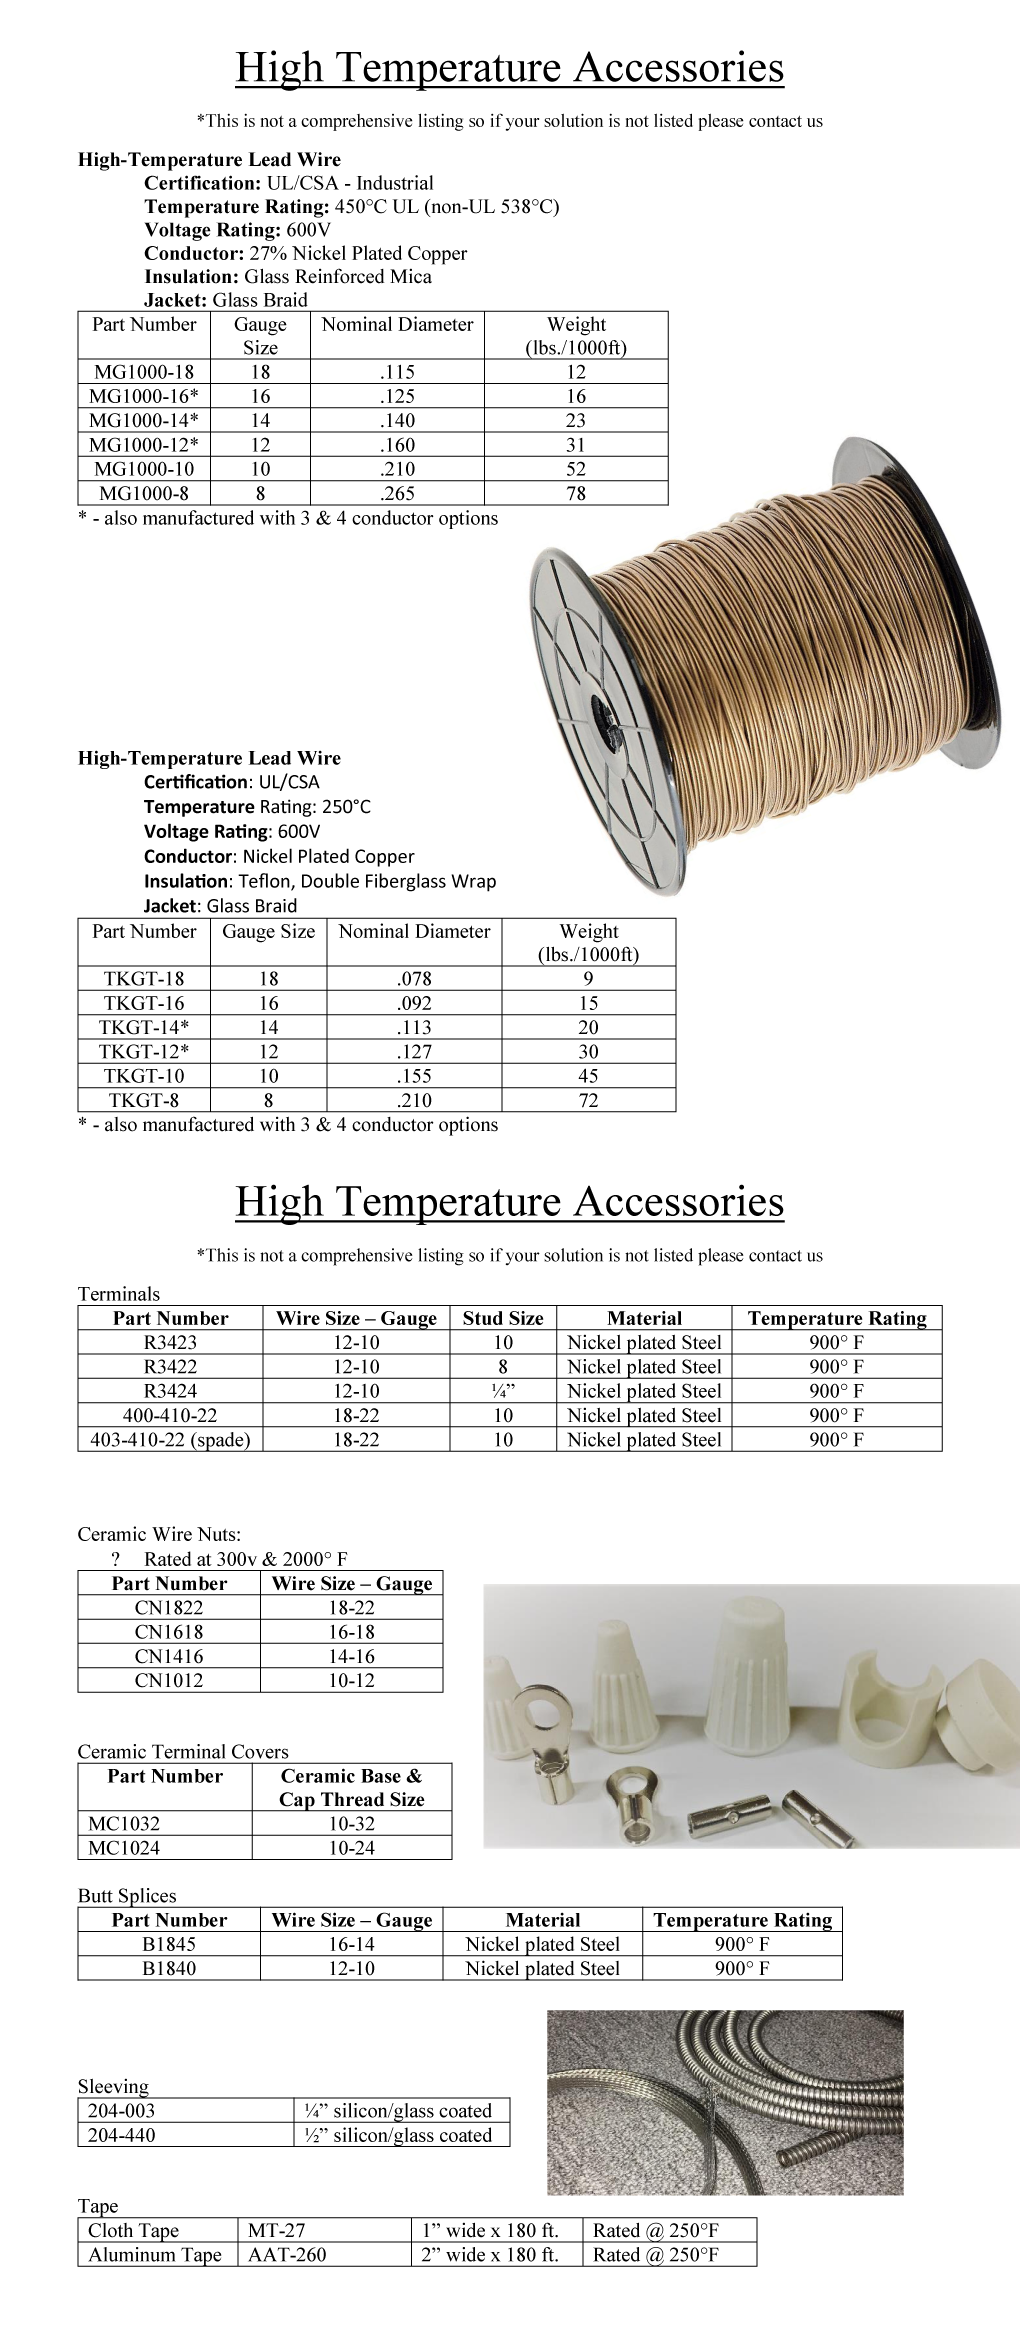 High Temperature Accessories